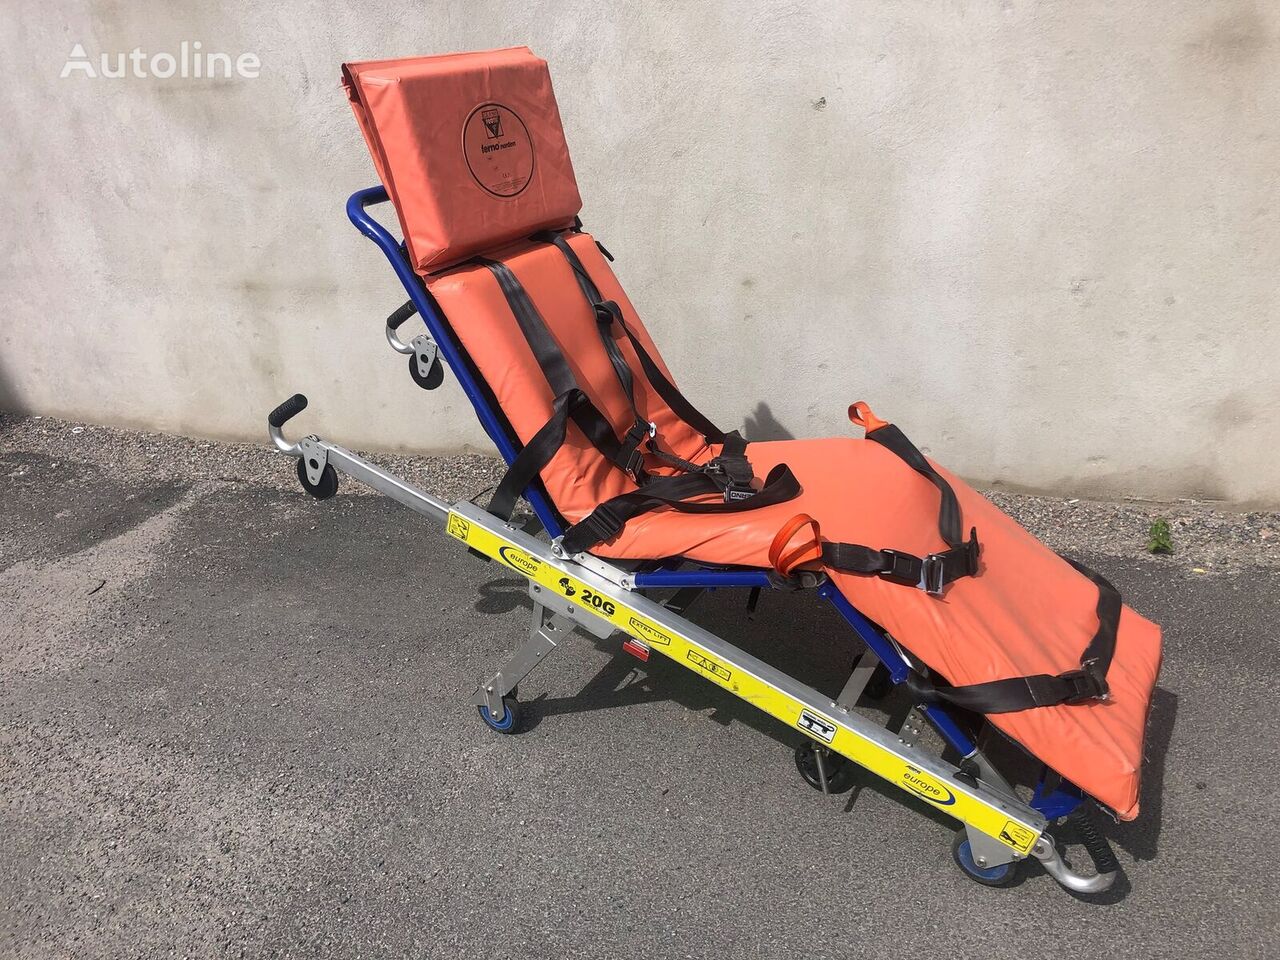 oprema za reševalna vozila Ambulance stretcher Allfa 20G, 300 kg